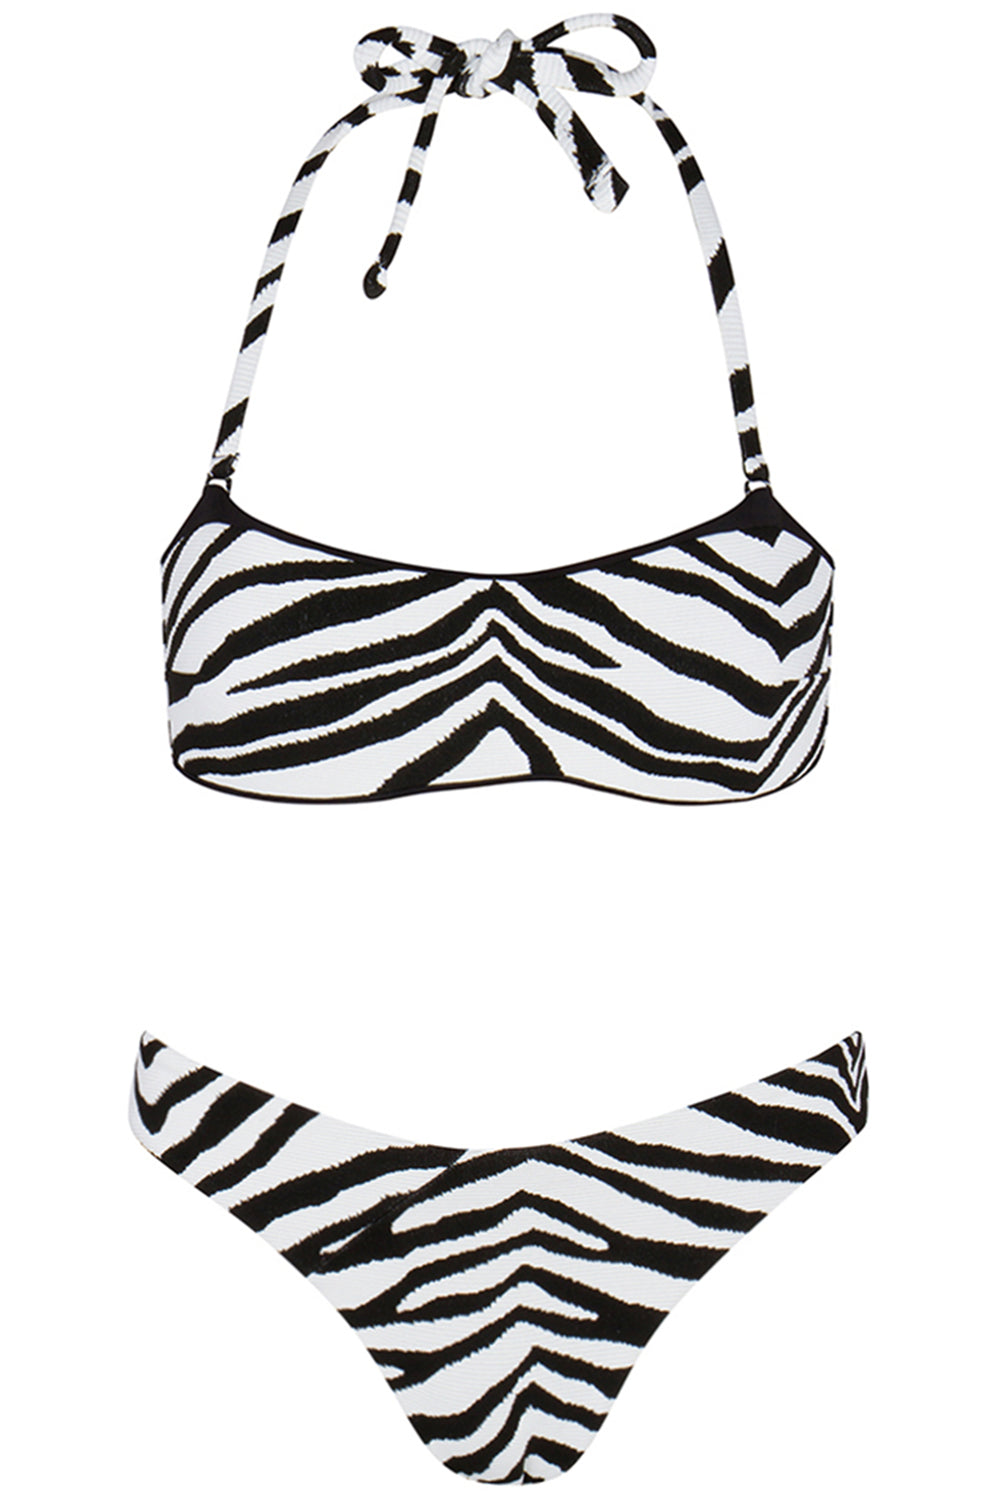 Maui Bikini Zebra Set on white background front view.